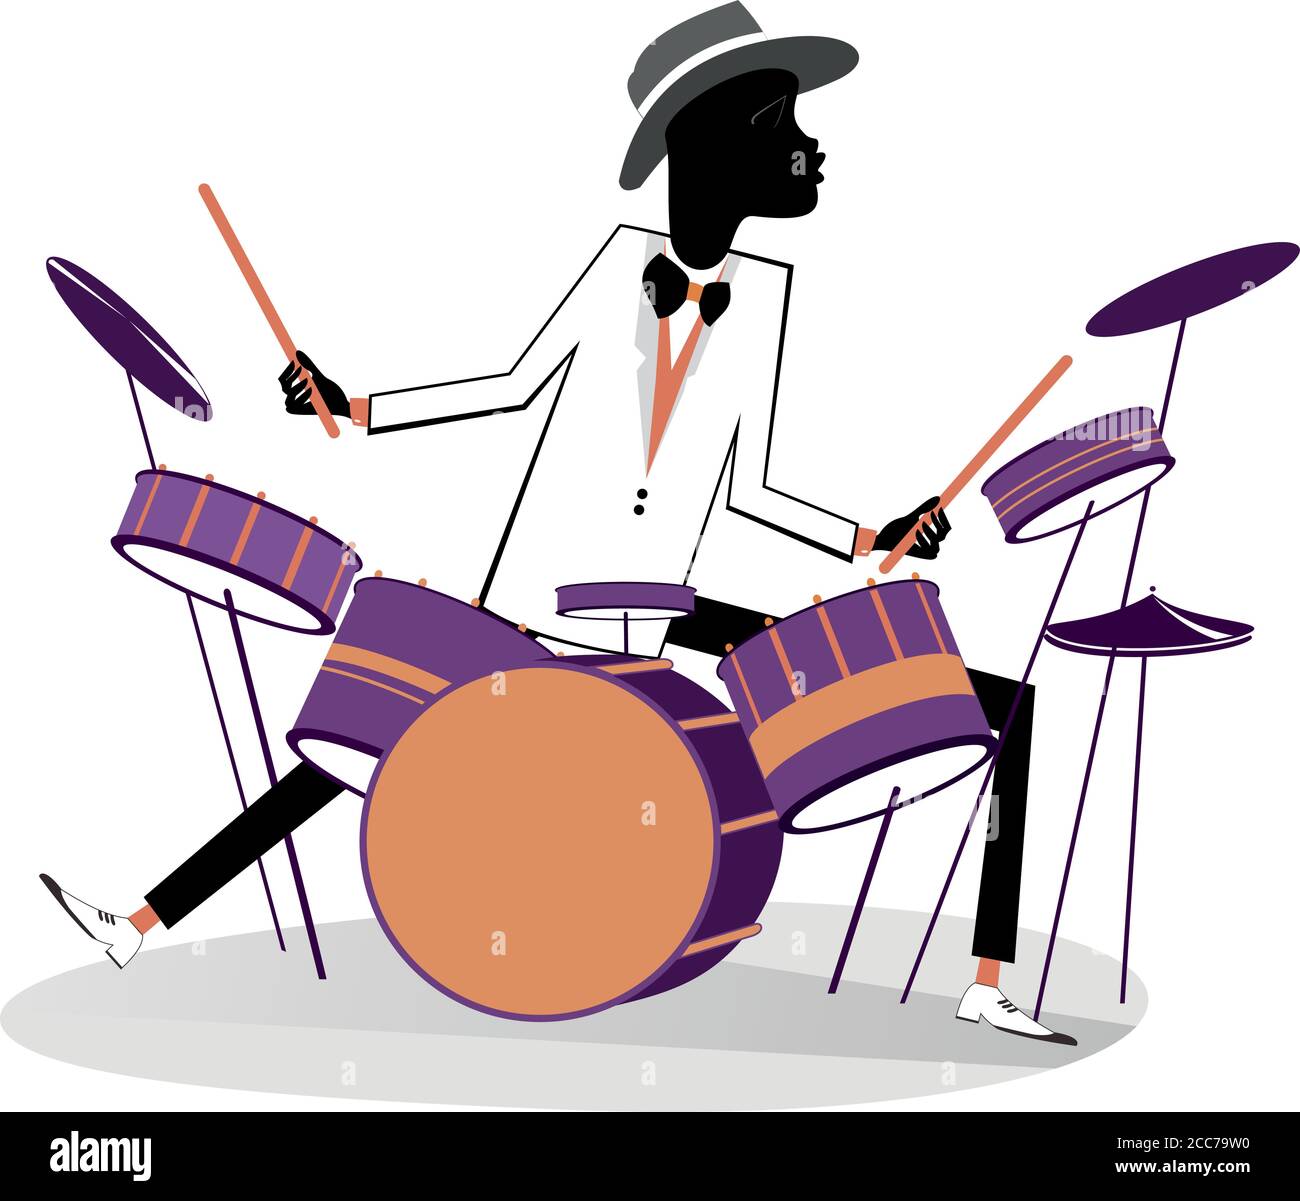 Illustration du batteur et du kit de batterie africains. Caricature homme africain joue sur des tambours isolés sur l'illustration blanche Illustration de Vecteur